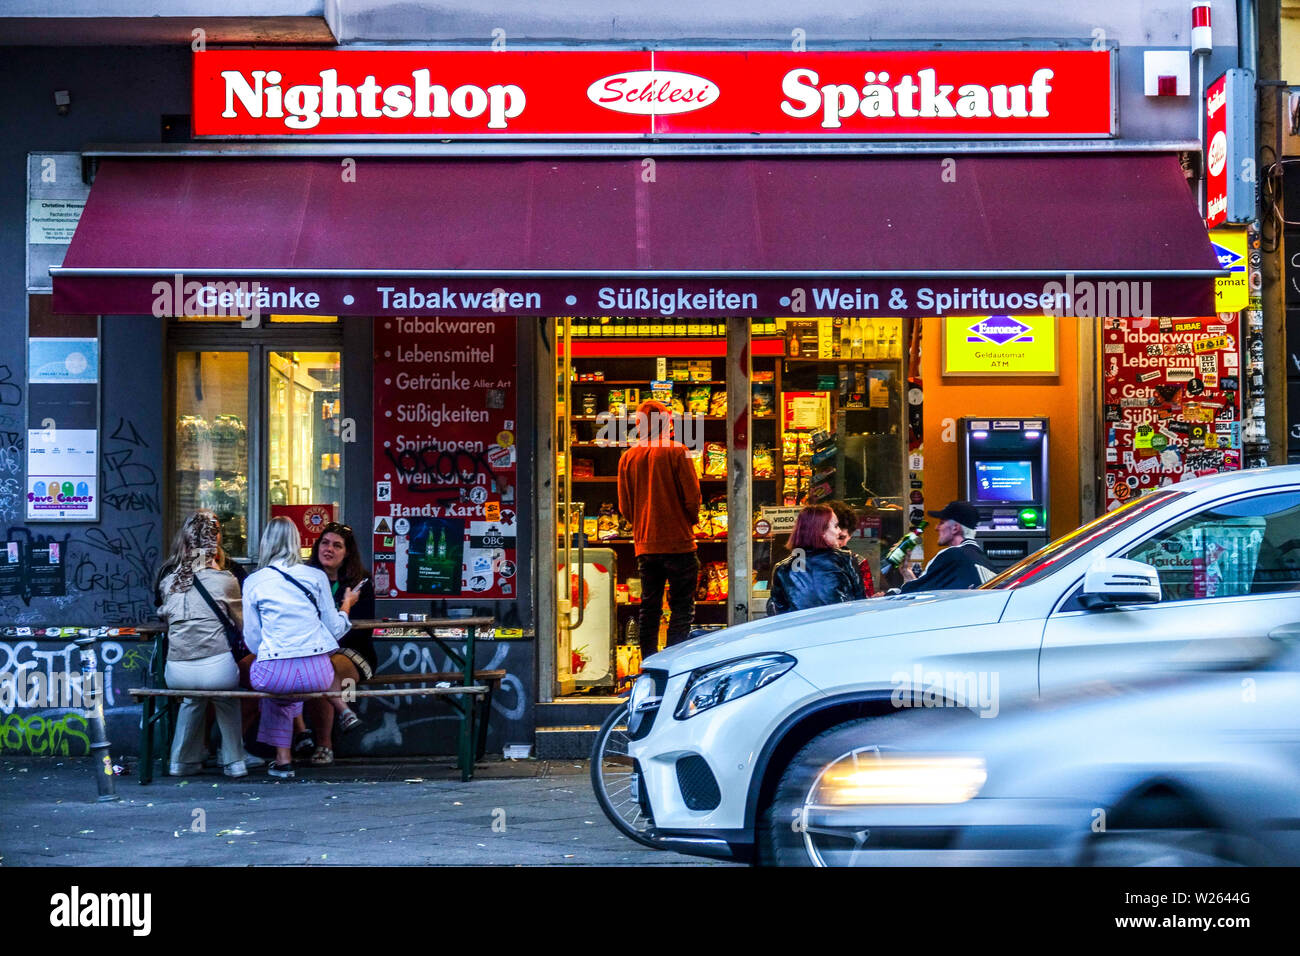 People drinking outside Late-night shop, Spatkauf in Berlin Kreuzberg, Germany Stock Photo